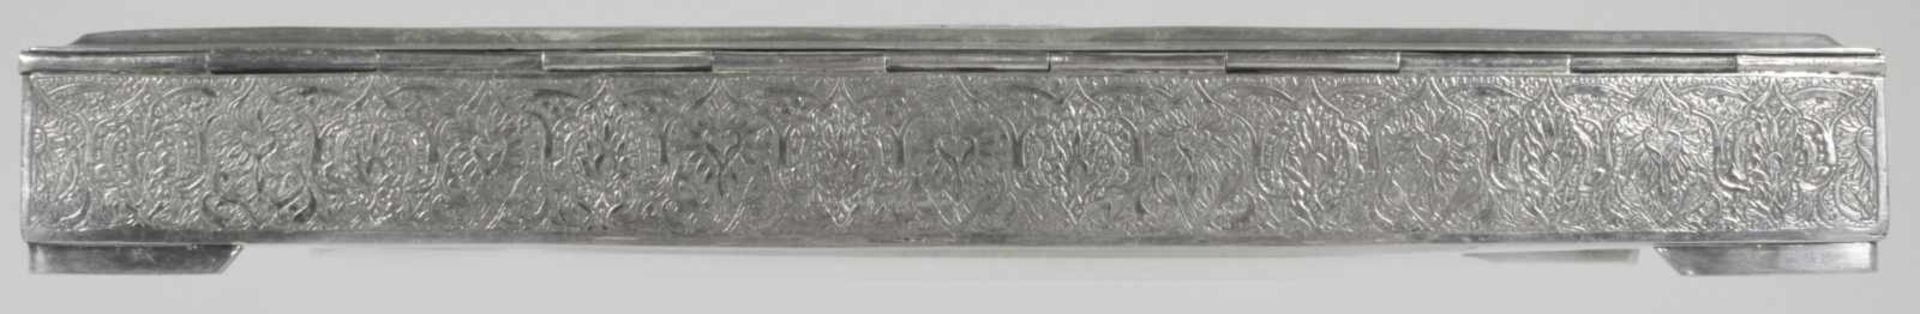 Koran-Schatulle, Persien, um 1900, Silber 84, über 4 flachen Eckfüßchen rechteckige,zylindrische - Bild 4 aus 5